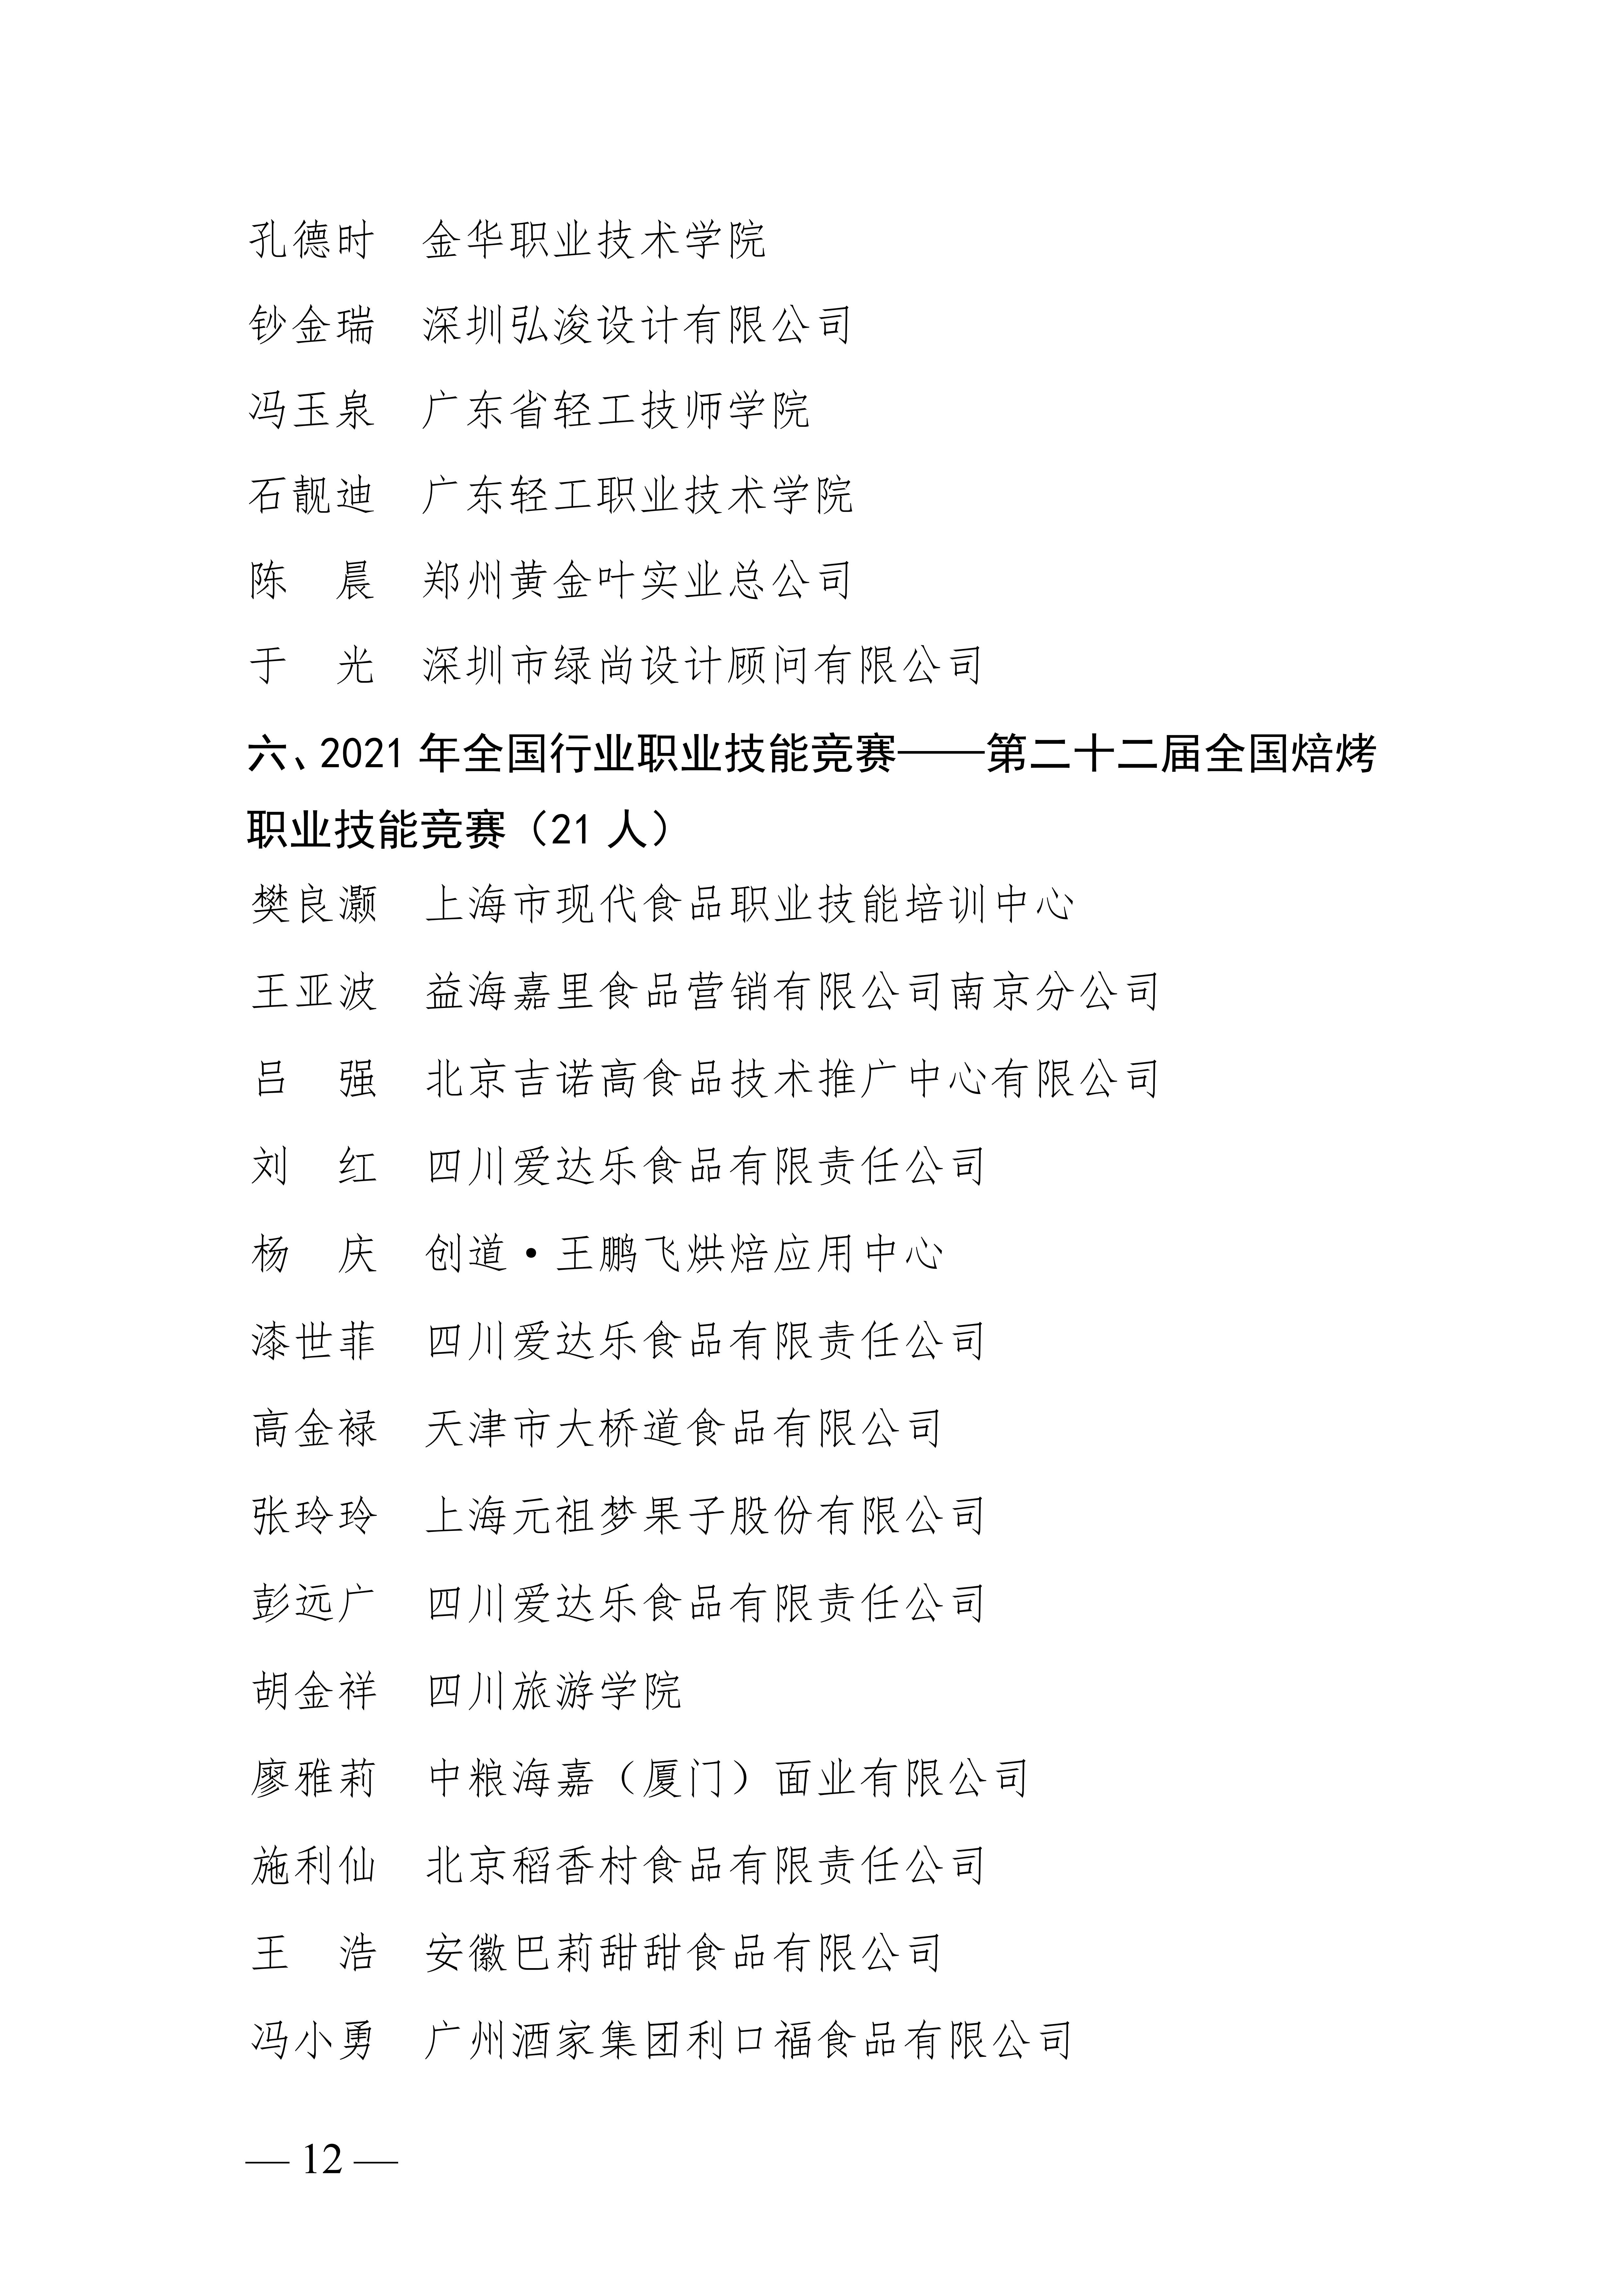 关于授予张宇鹏等252名同志“全国轻工技术能手”荣誉称号的决定_11.jpg